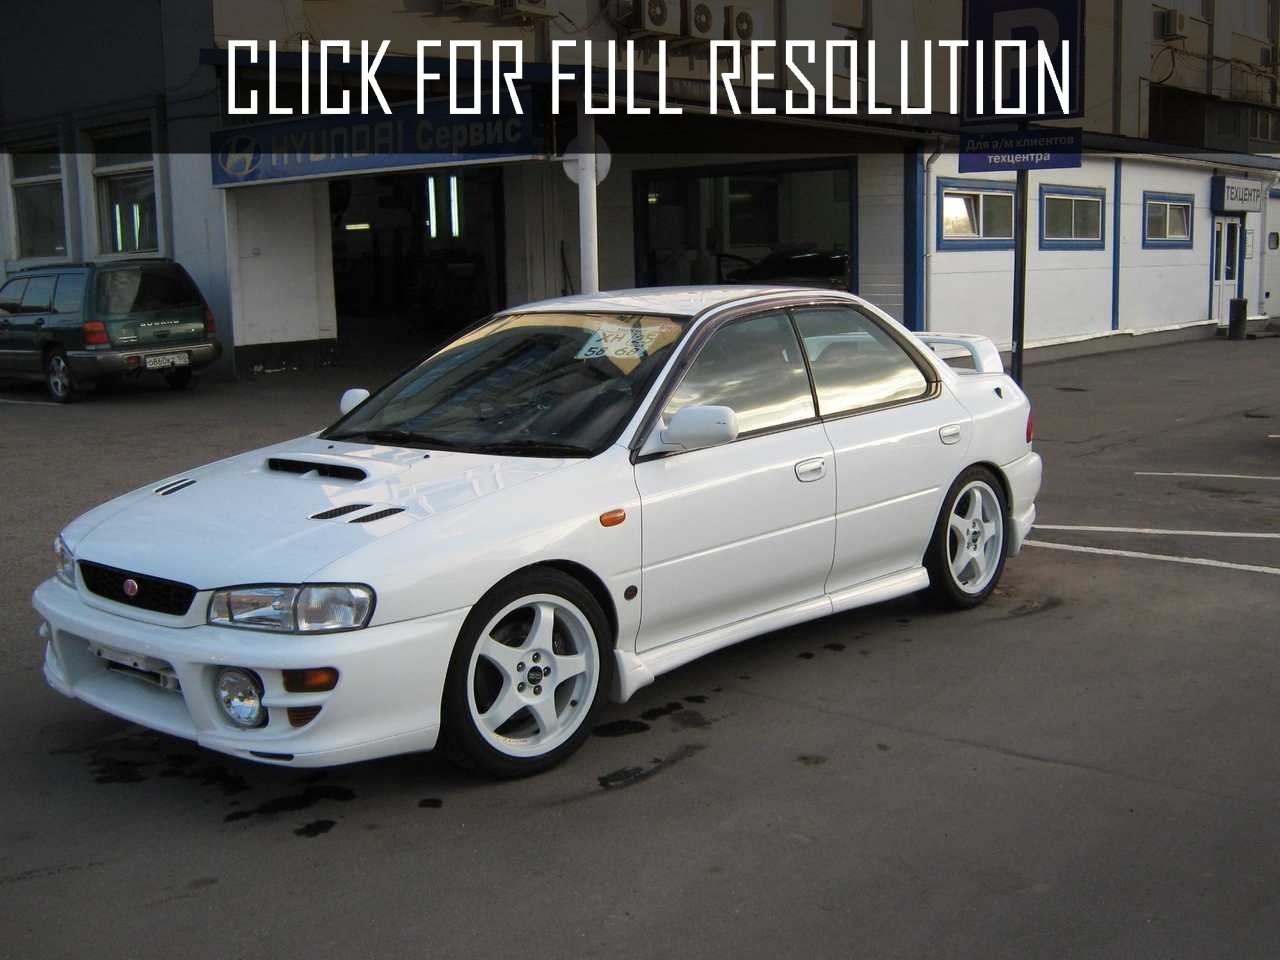 1996 Subaru Impreza Wrx Sti news, reviews, msrp, ratings